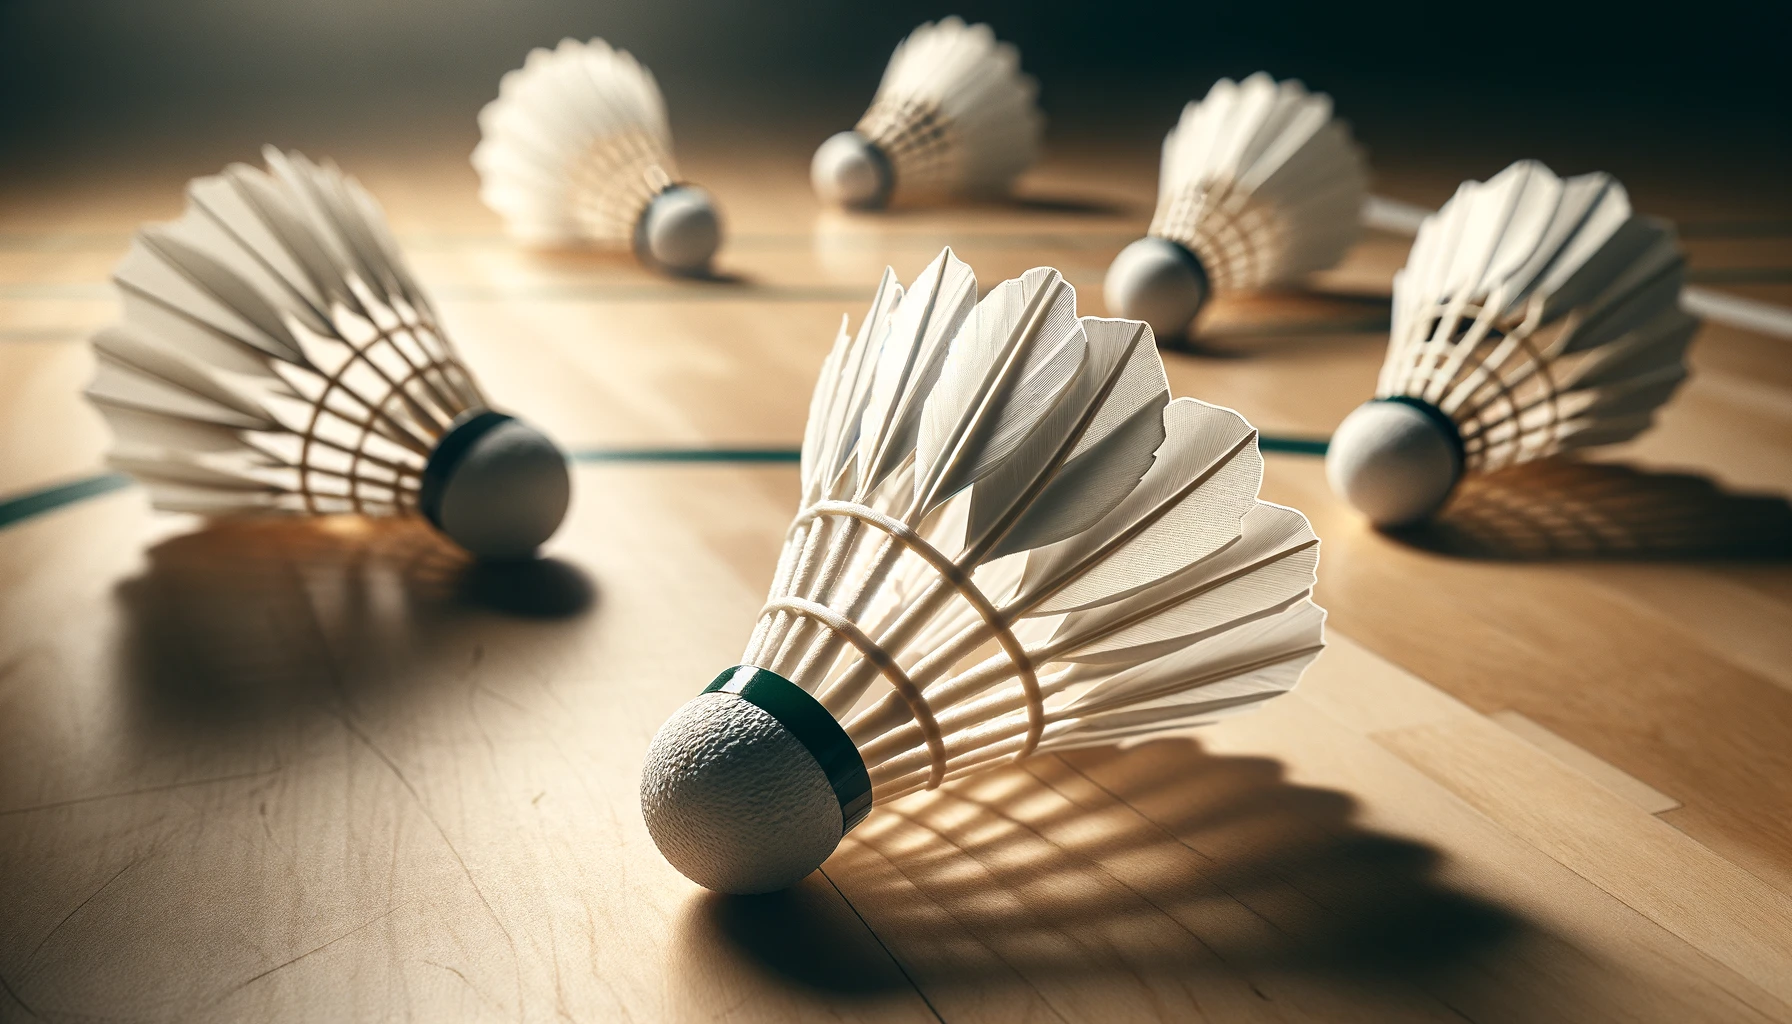 Eine Nahaufnahme mehrerer Federbälle, auch bekannt als Birdie, der beim Badminton verwendet wird. Der Fokus liegt auf den weißen Federn und dem abgerundeten Korkboden.